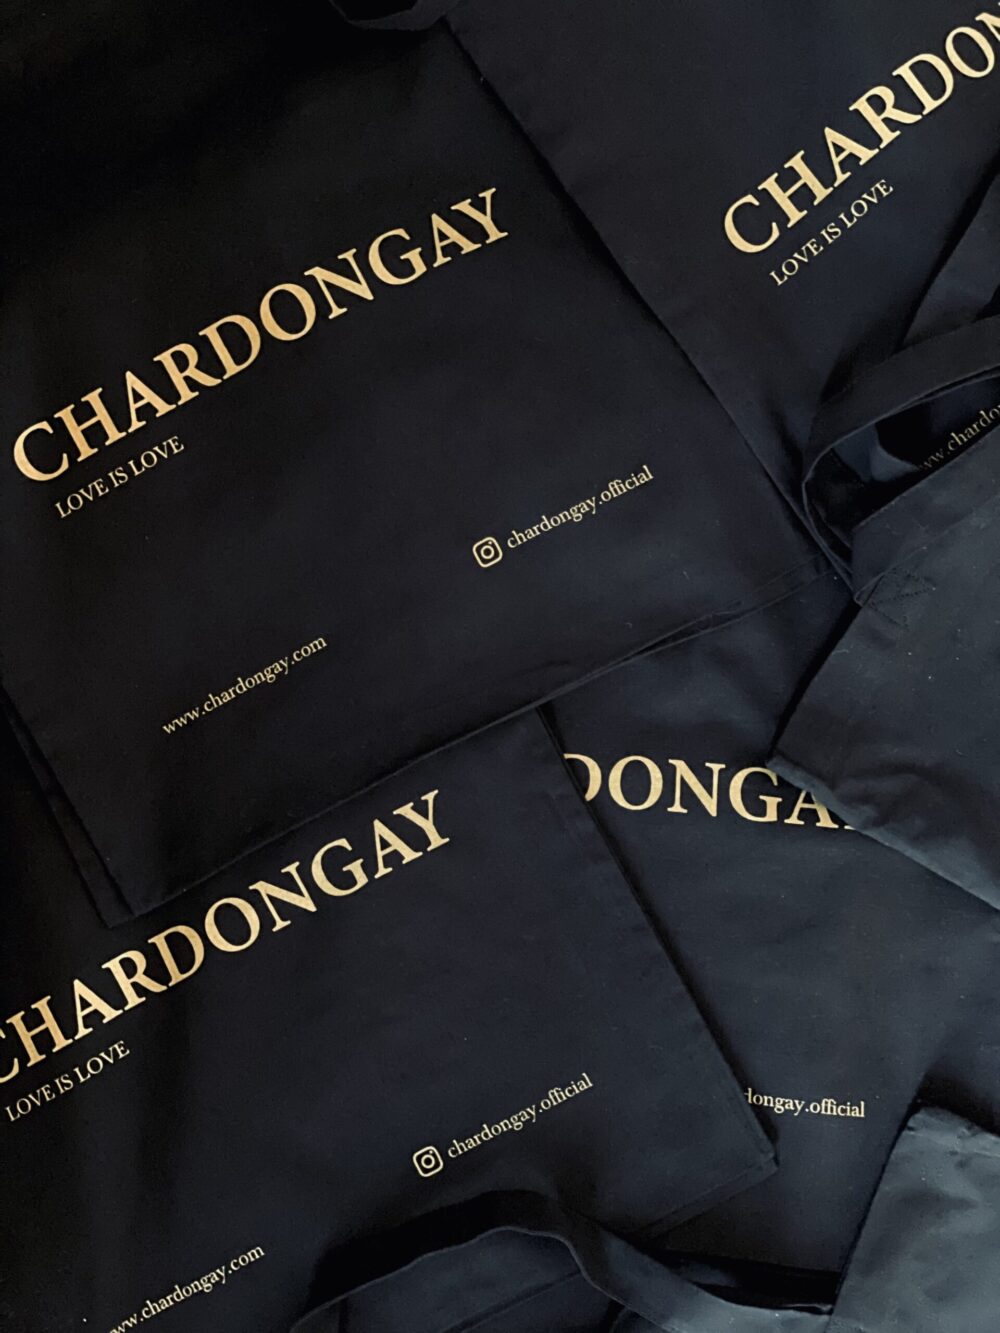 Chardongay tote bag